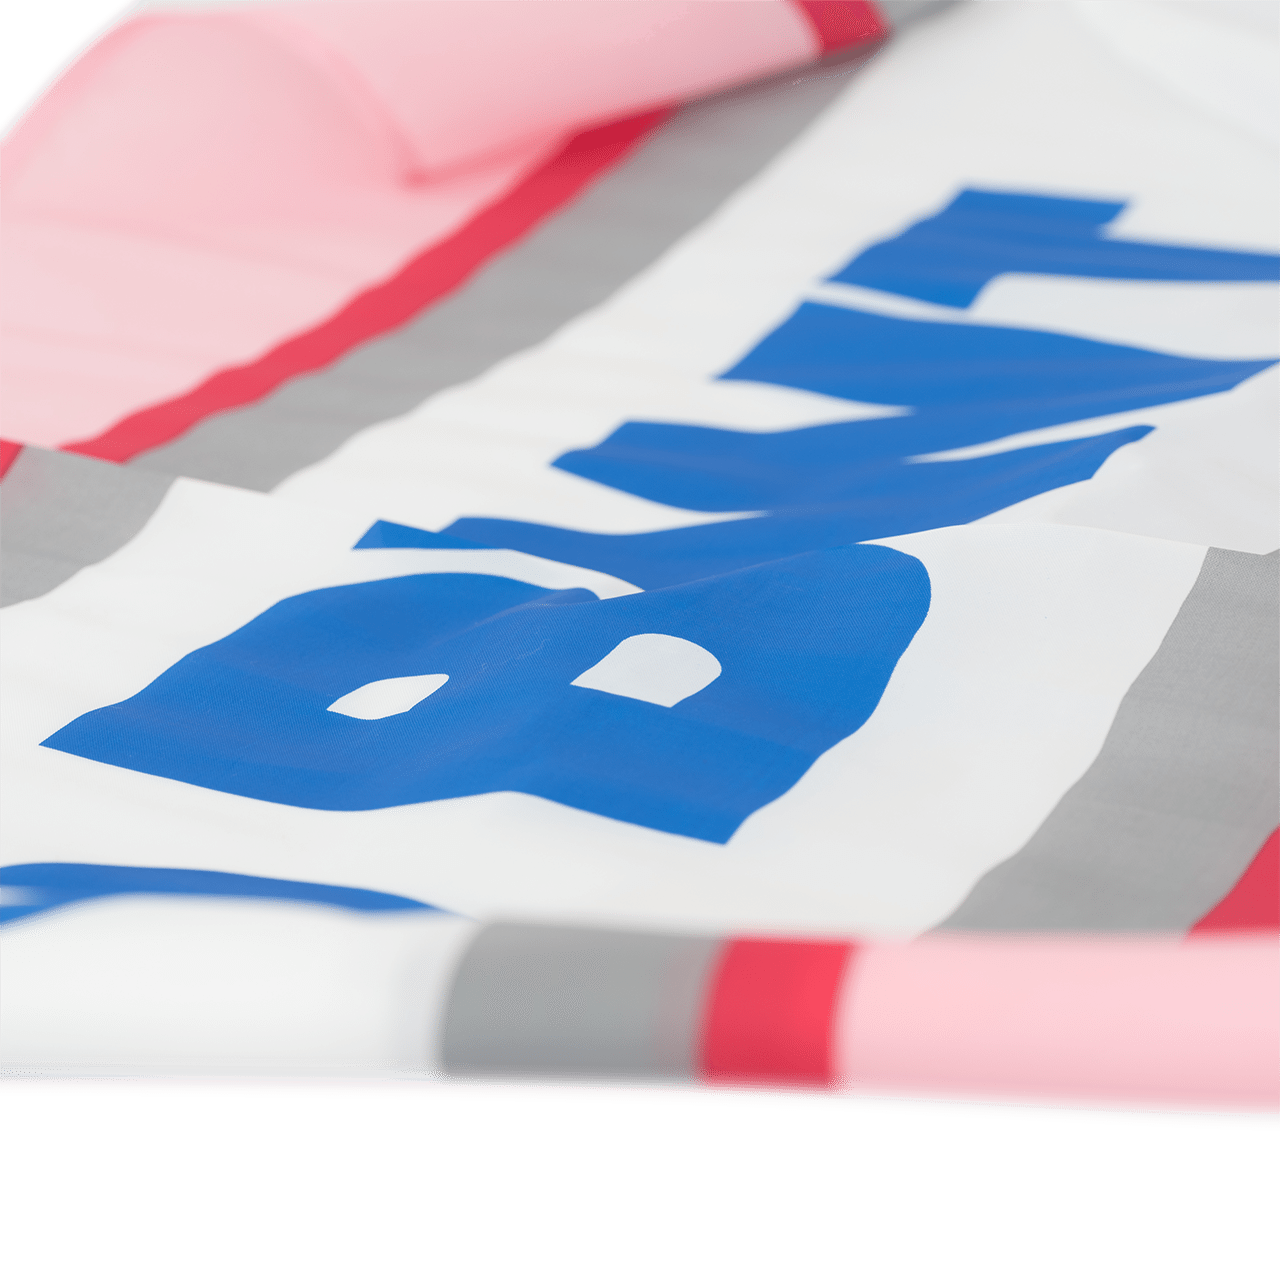 BWT Fahne in der Farbe pink,blau und weiß